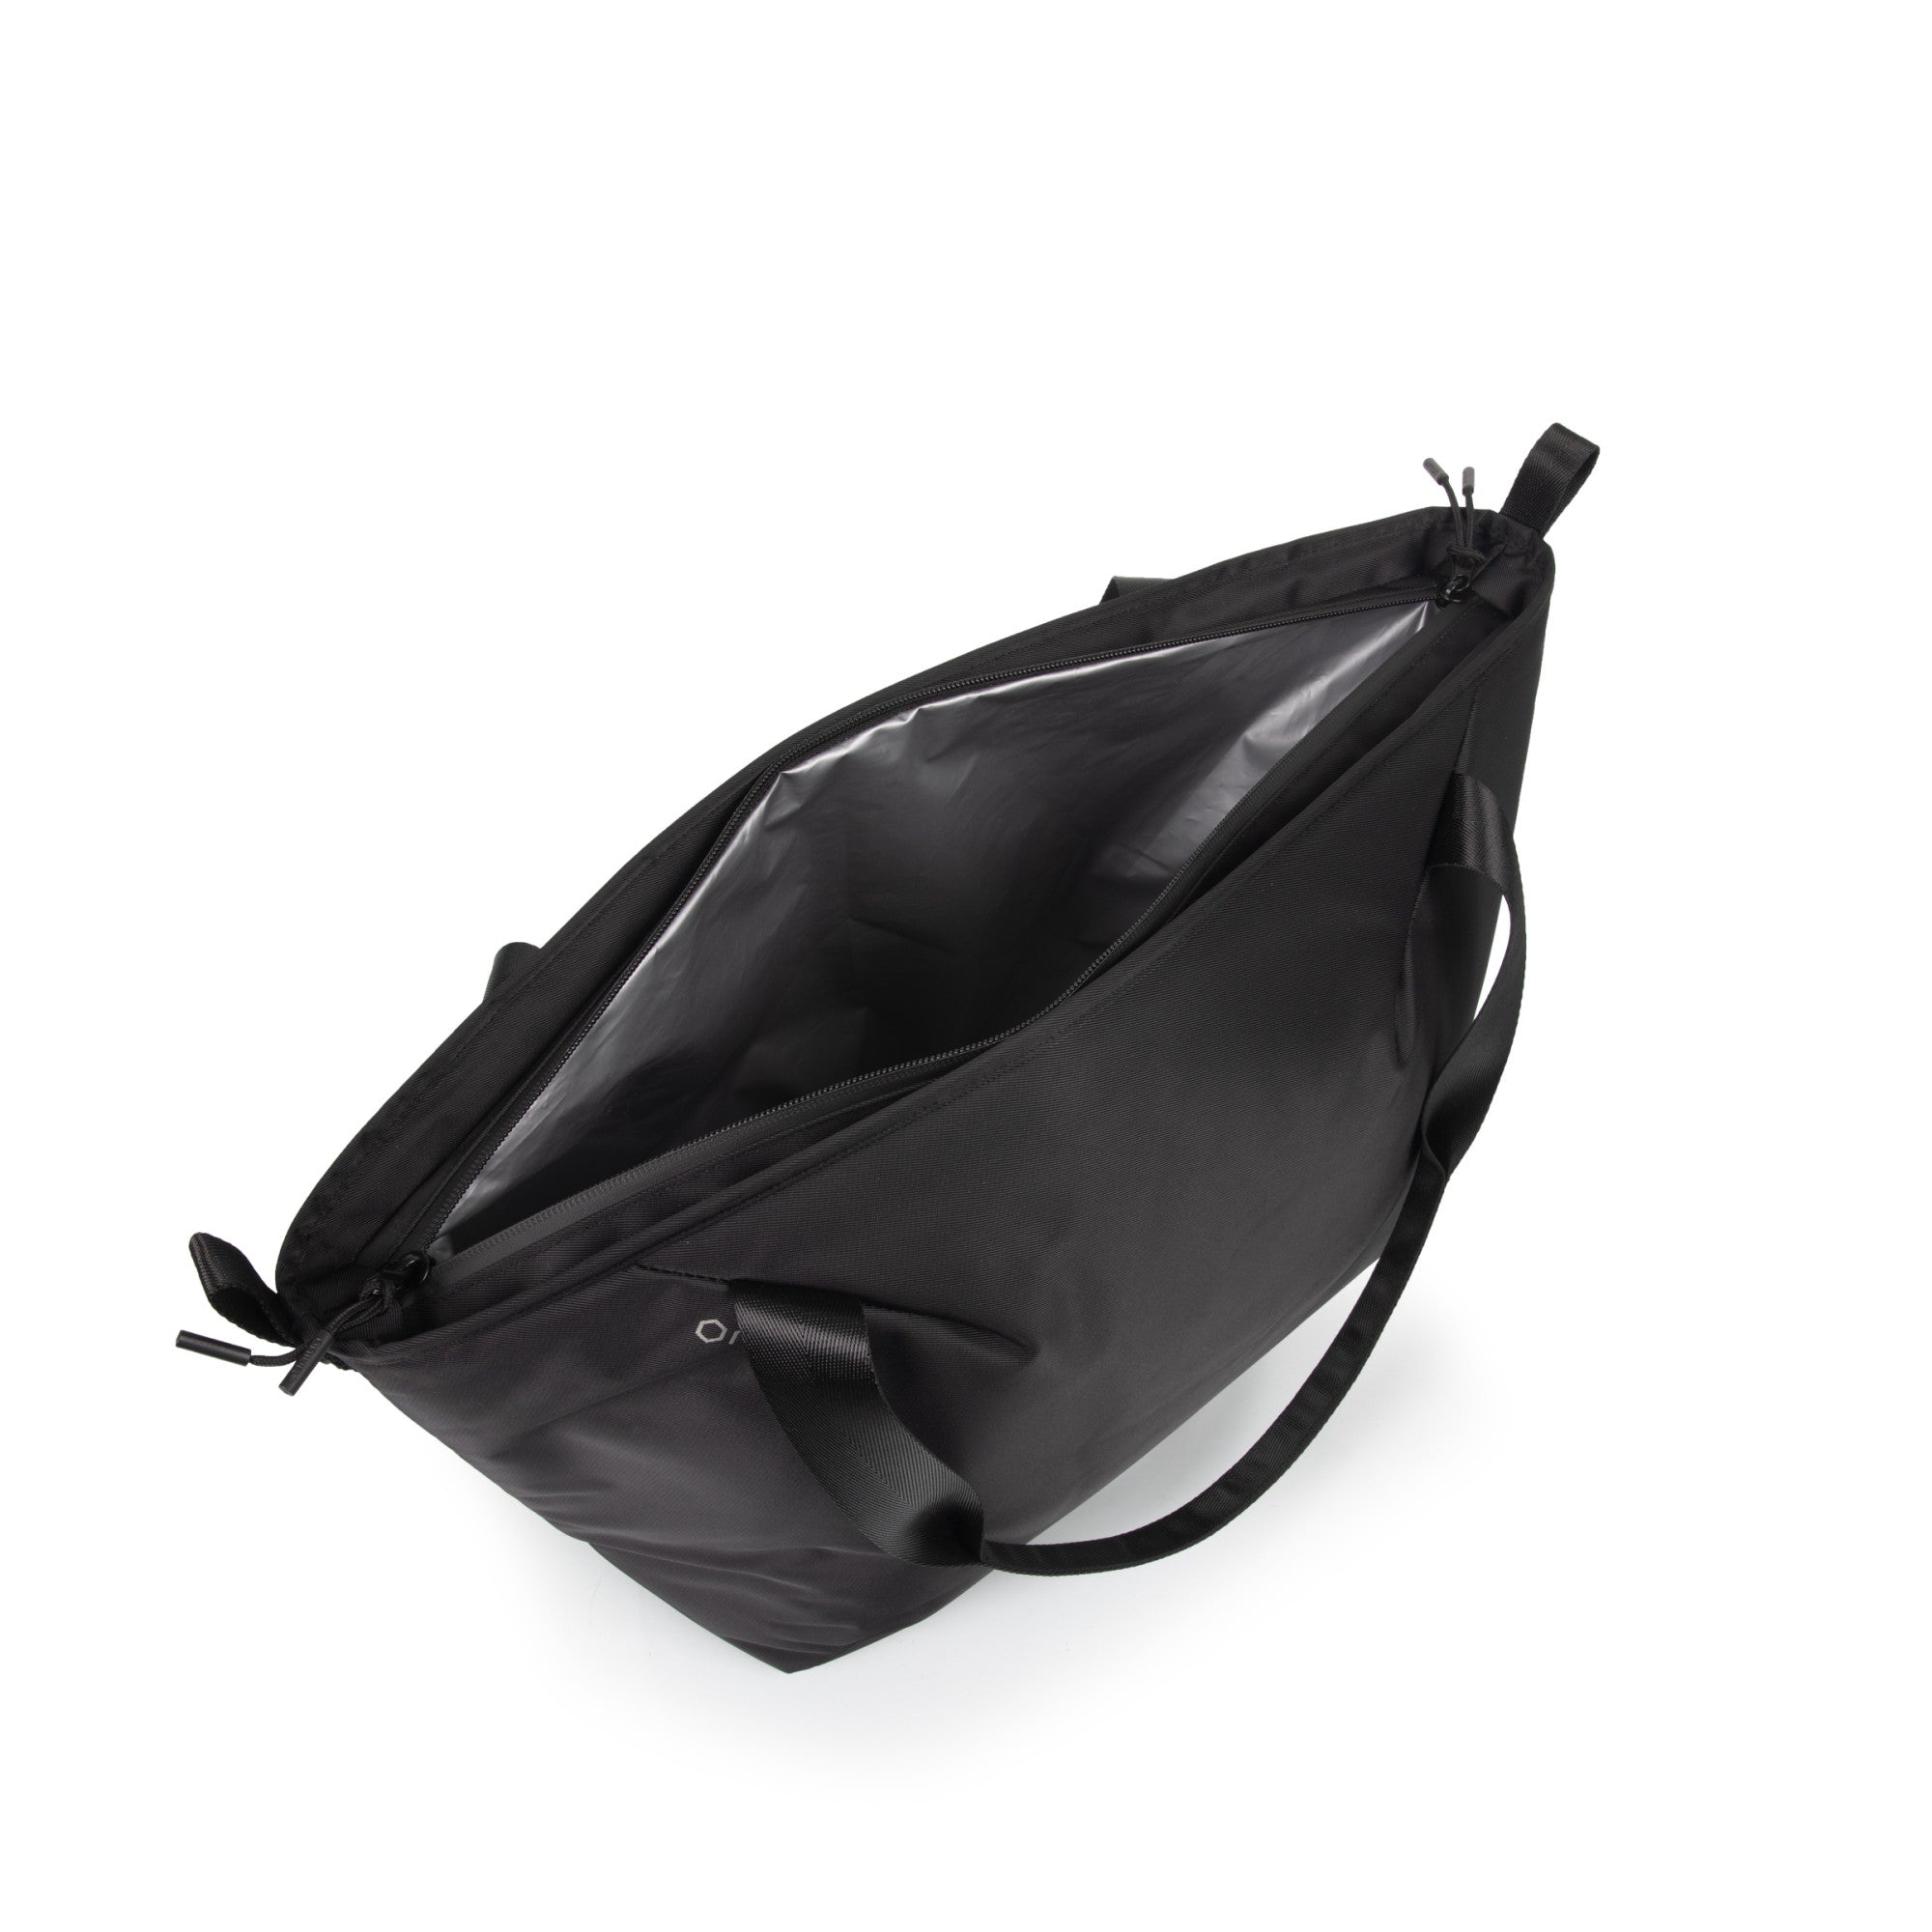 Wisconsin Badgers - Tarana Cooler Tote Bag